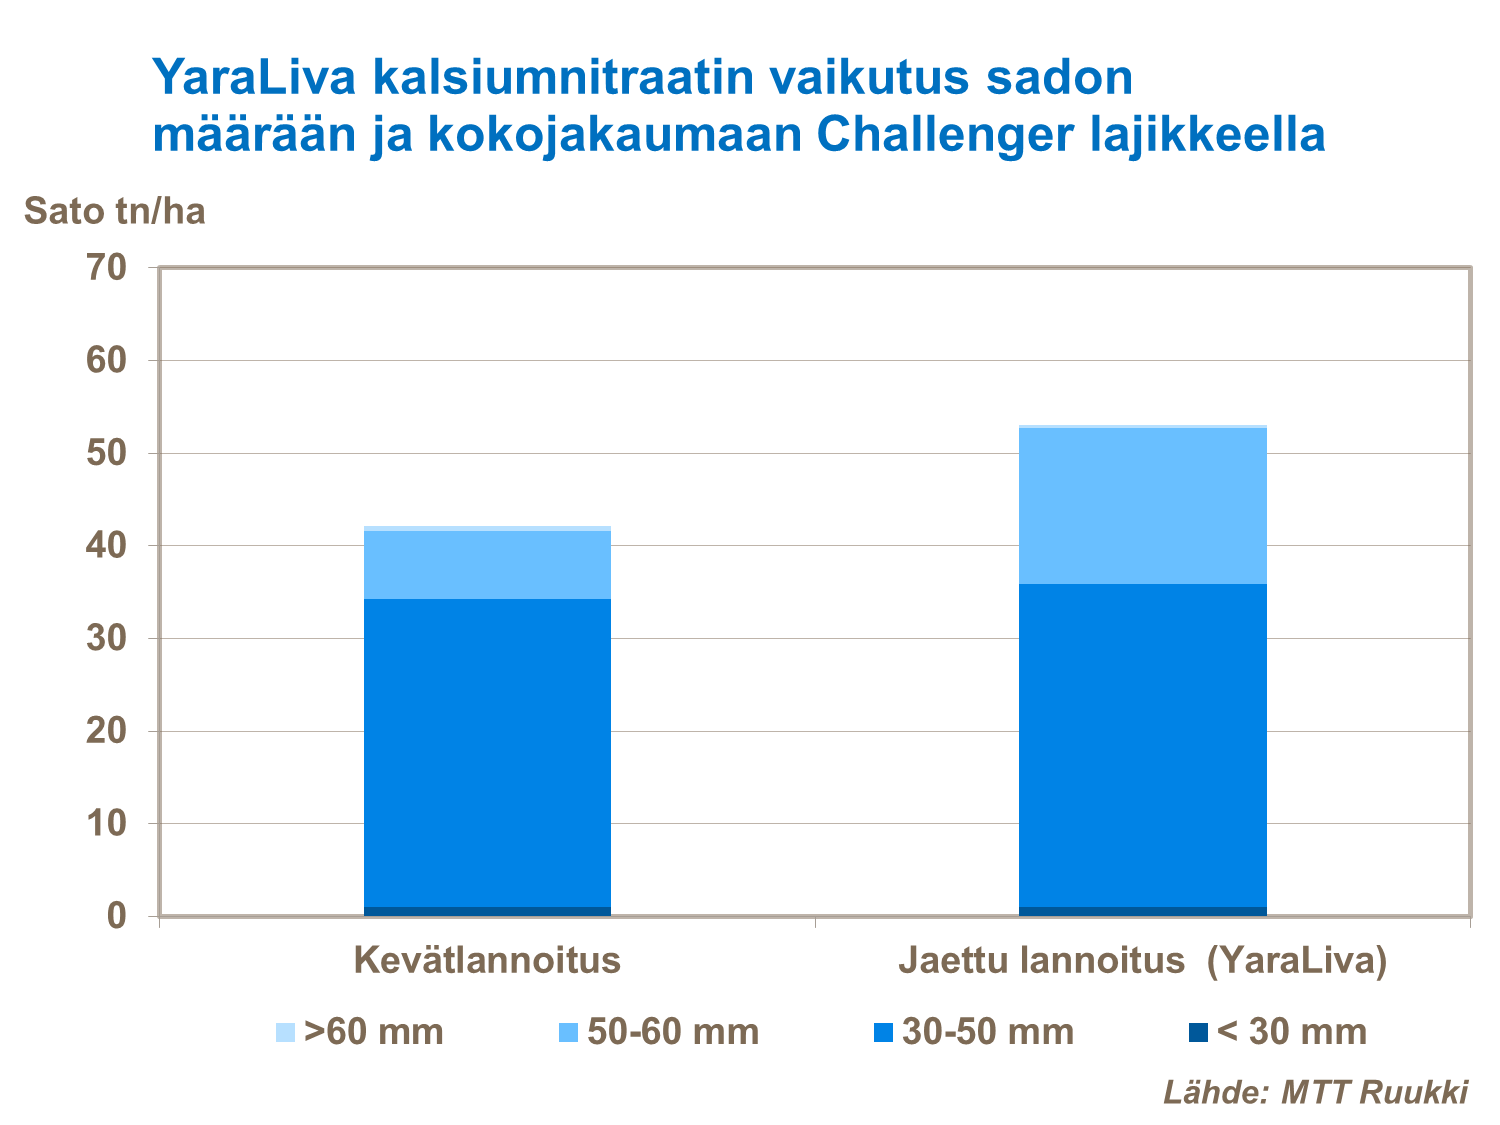 Jaettu lannoitus antoi hyvän satovasteen Suomessa tehdyssä tutkimuksessa.